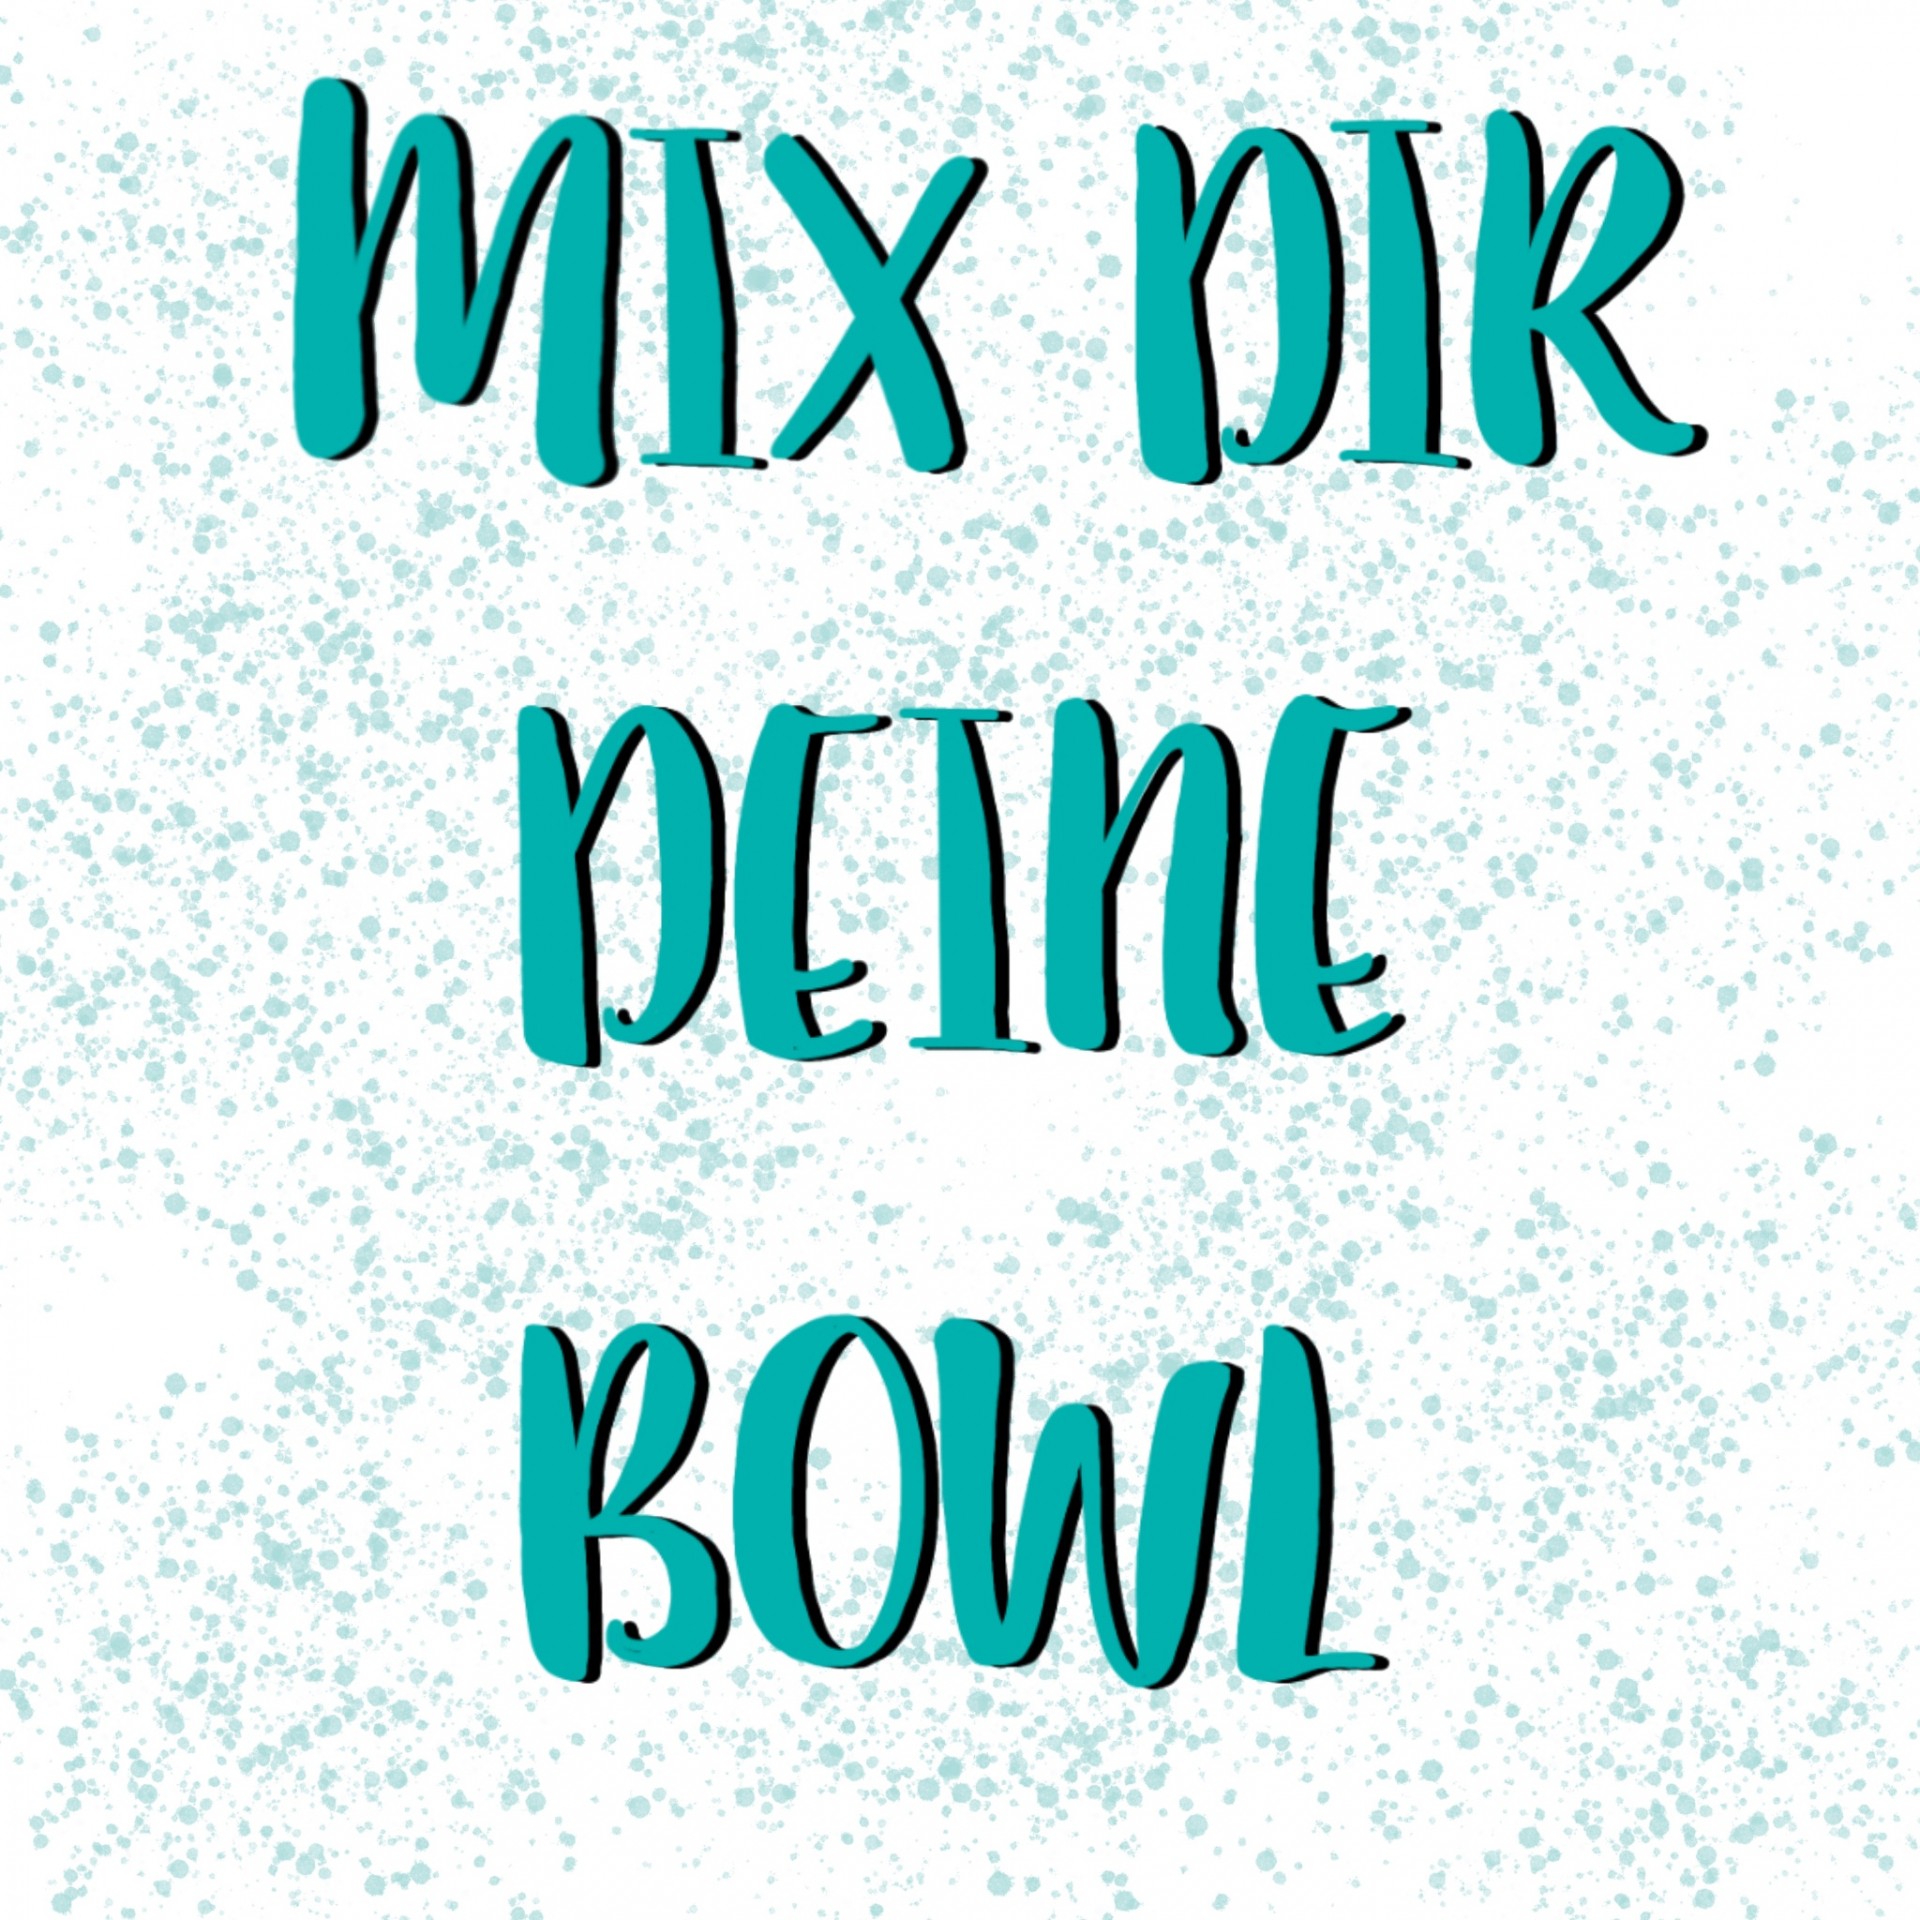 Mix dir deine Bowl ist zurück!